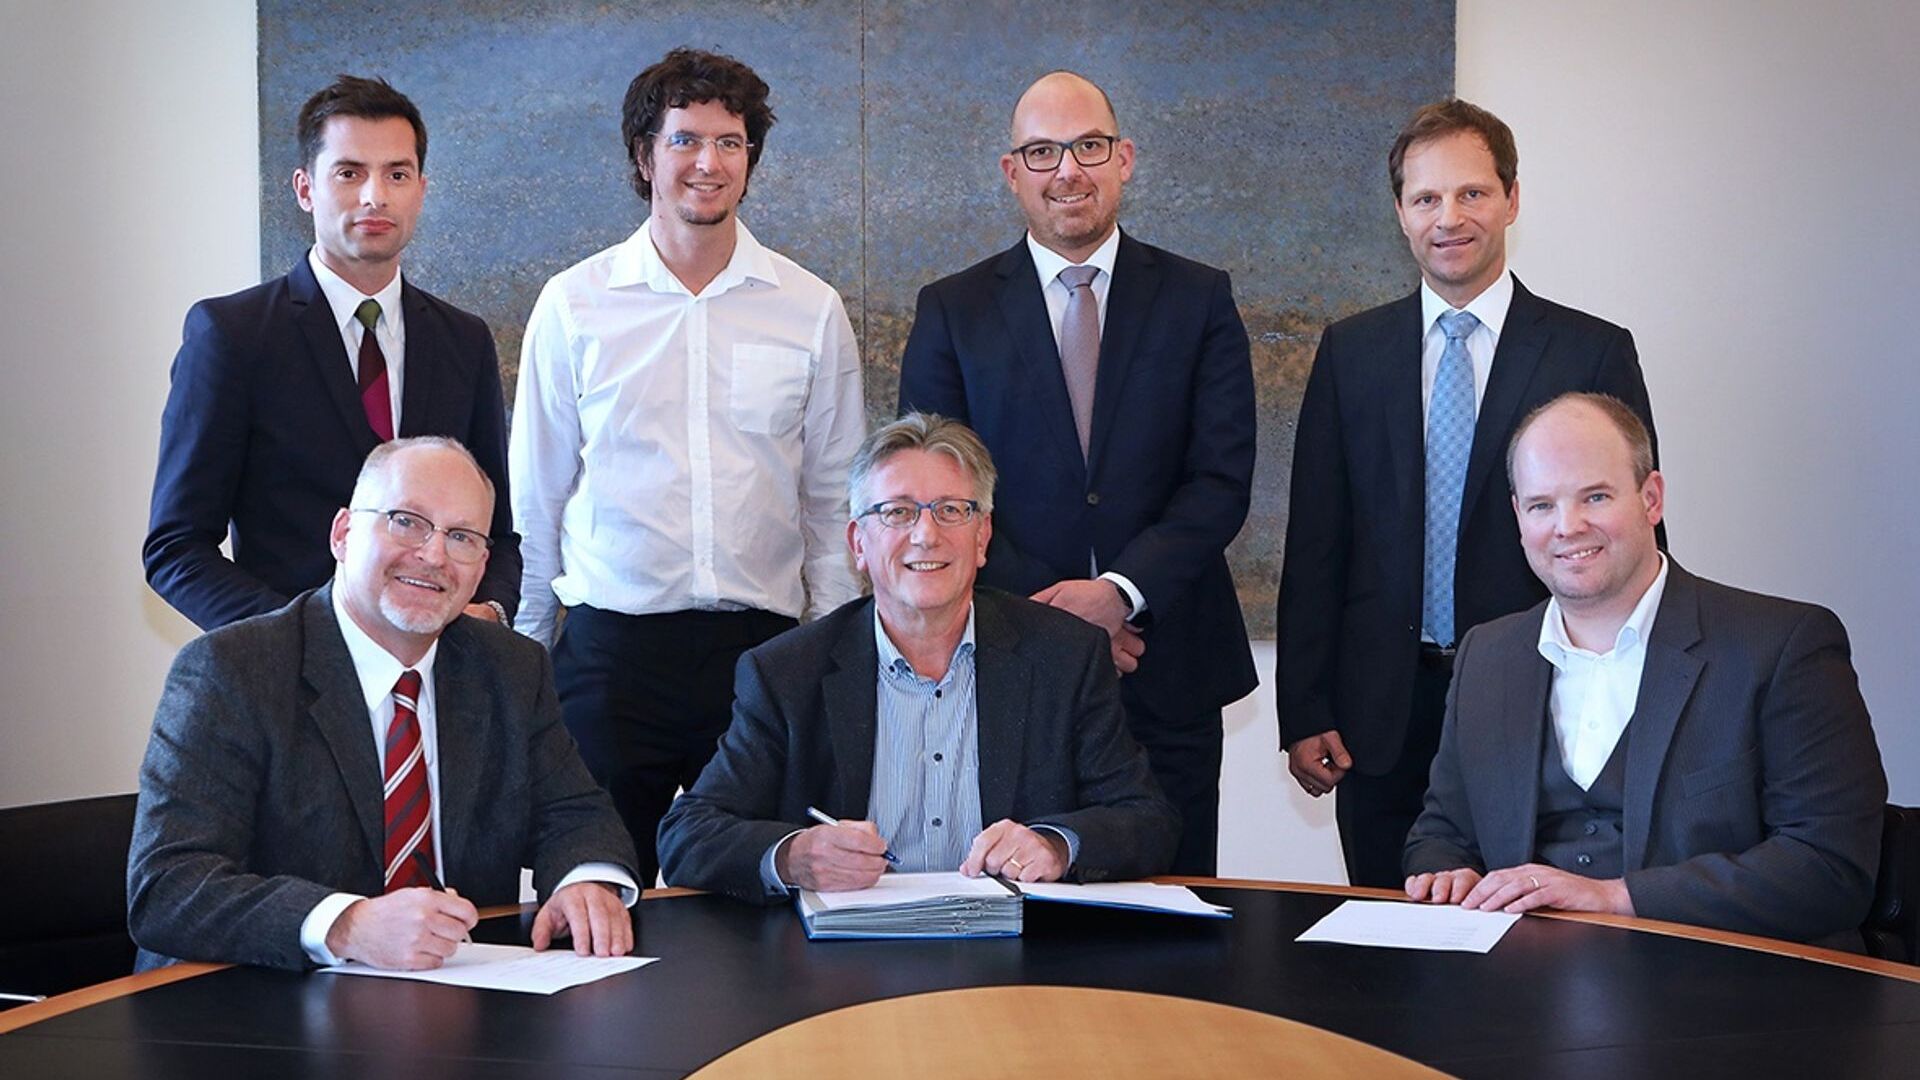 La sottoscrizione della collaborazione fra Innosuisse, l'Agenzia svizzera per la promozione dell'innovazione, e l'Ufficio degli Affari Economici del Liechtenstein